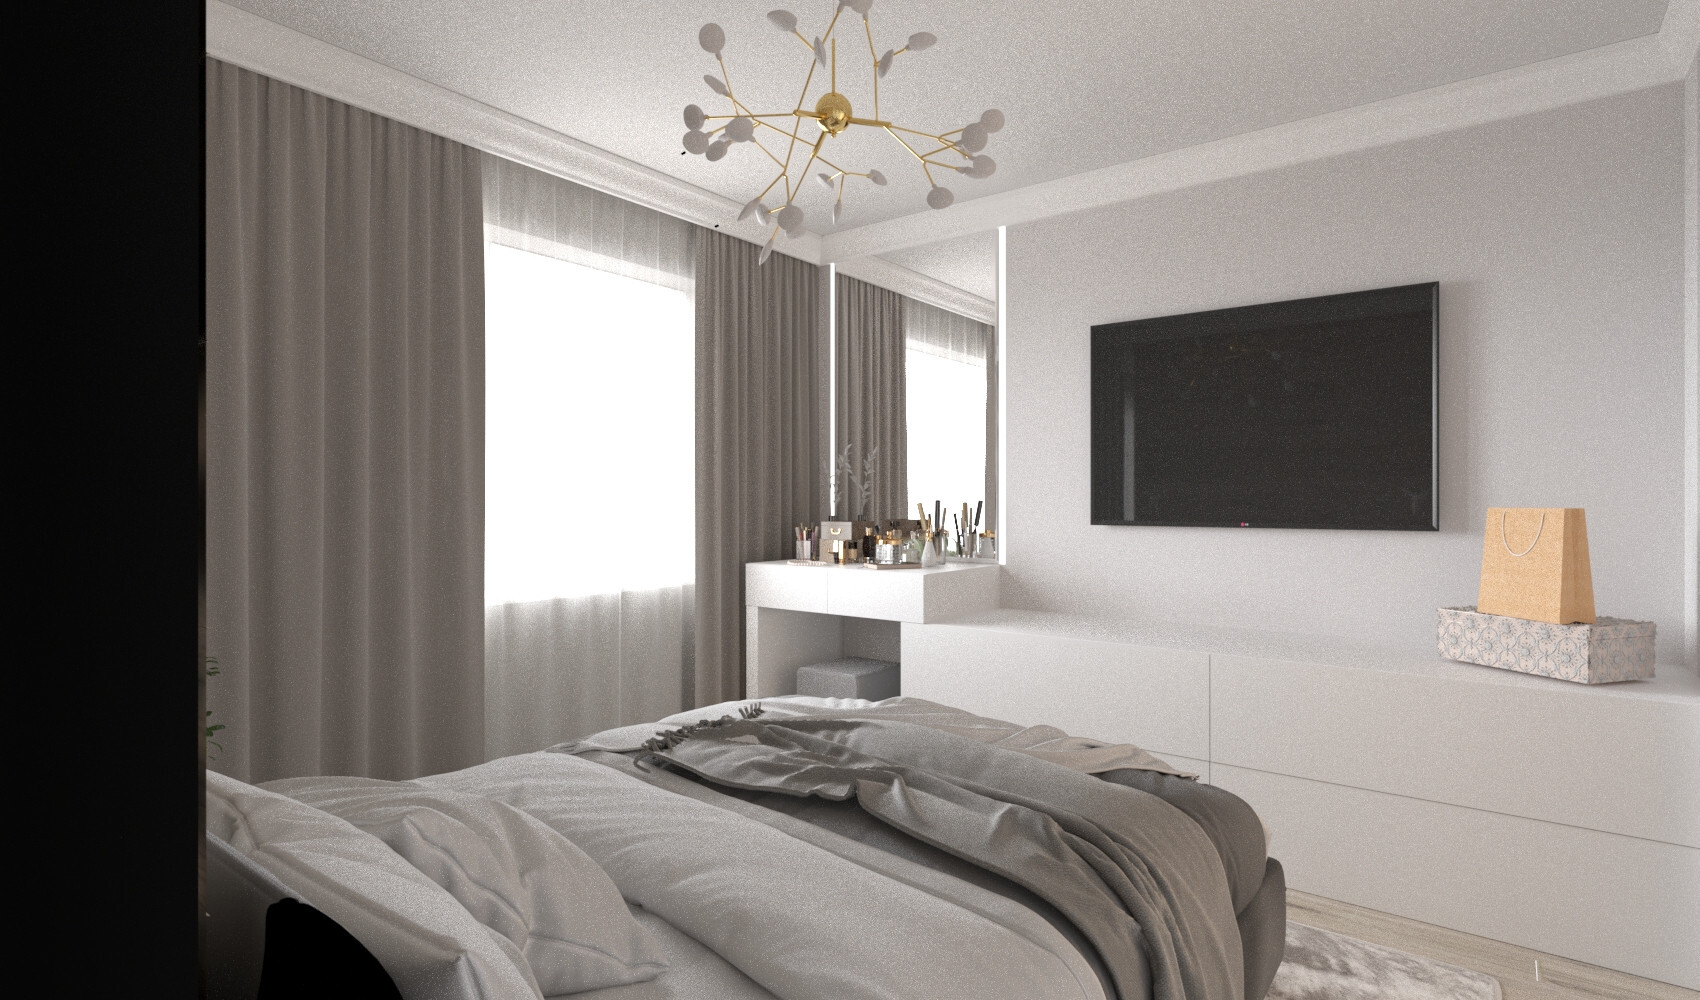 Интерьер спальни cветильниками над кроватью в современном стиле